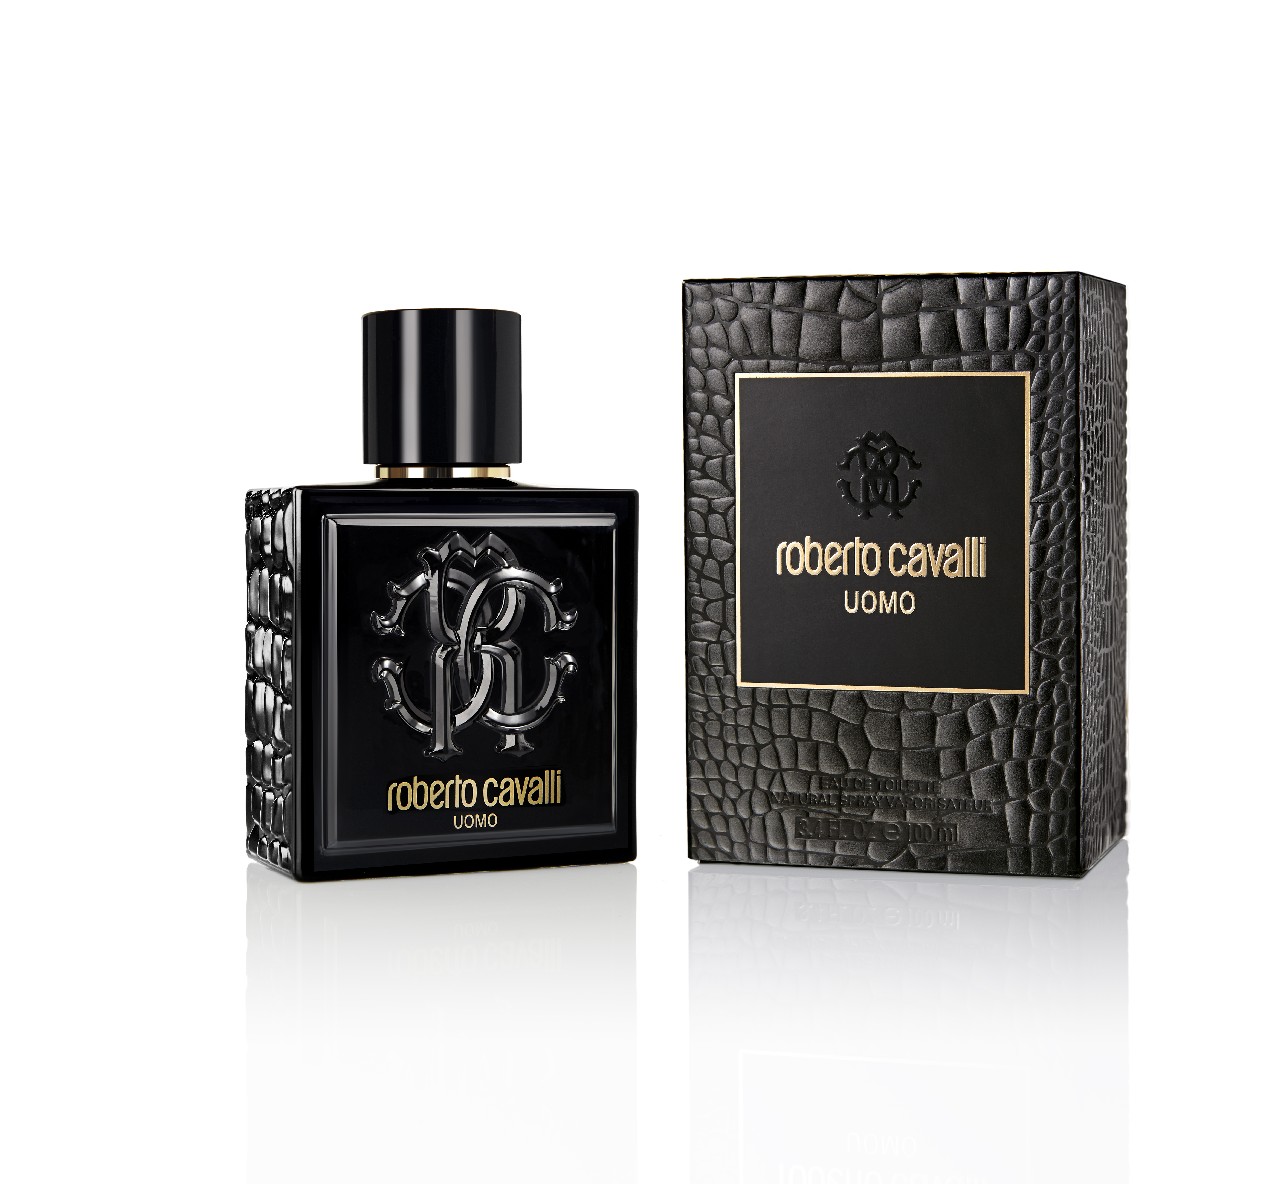 Roberto Cavalli Uomo profumo: la nuova fragranza maschile, per l&#8217;uomo bohemian-chic